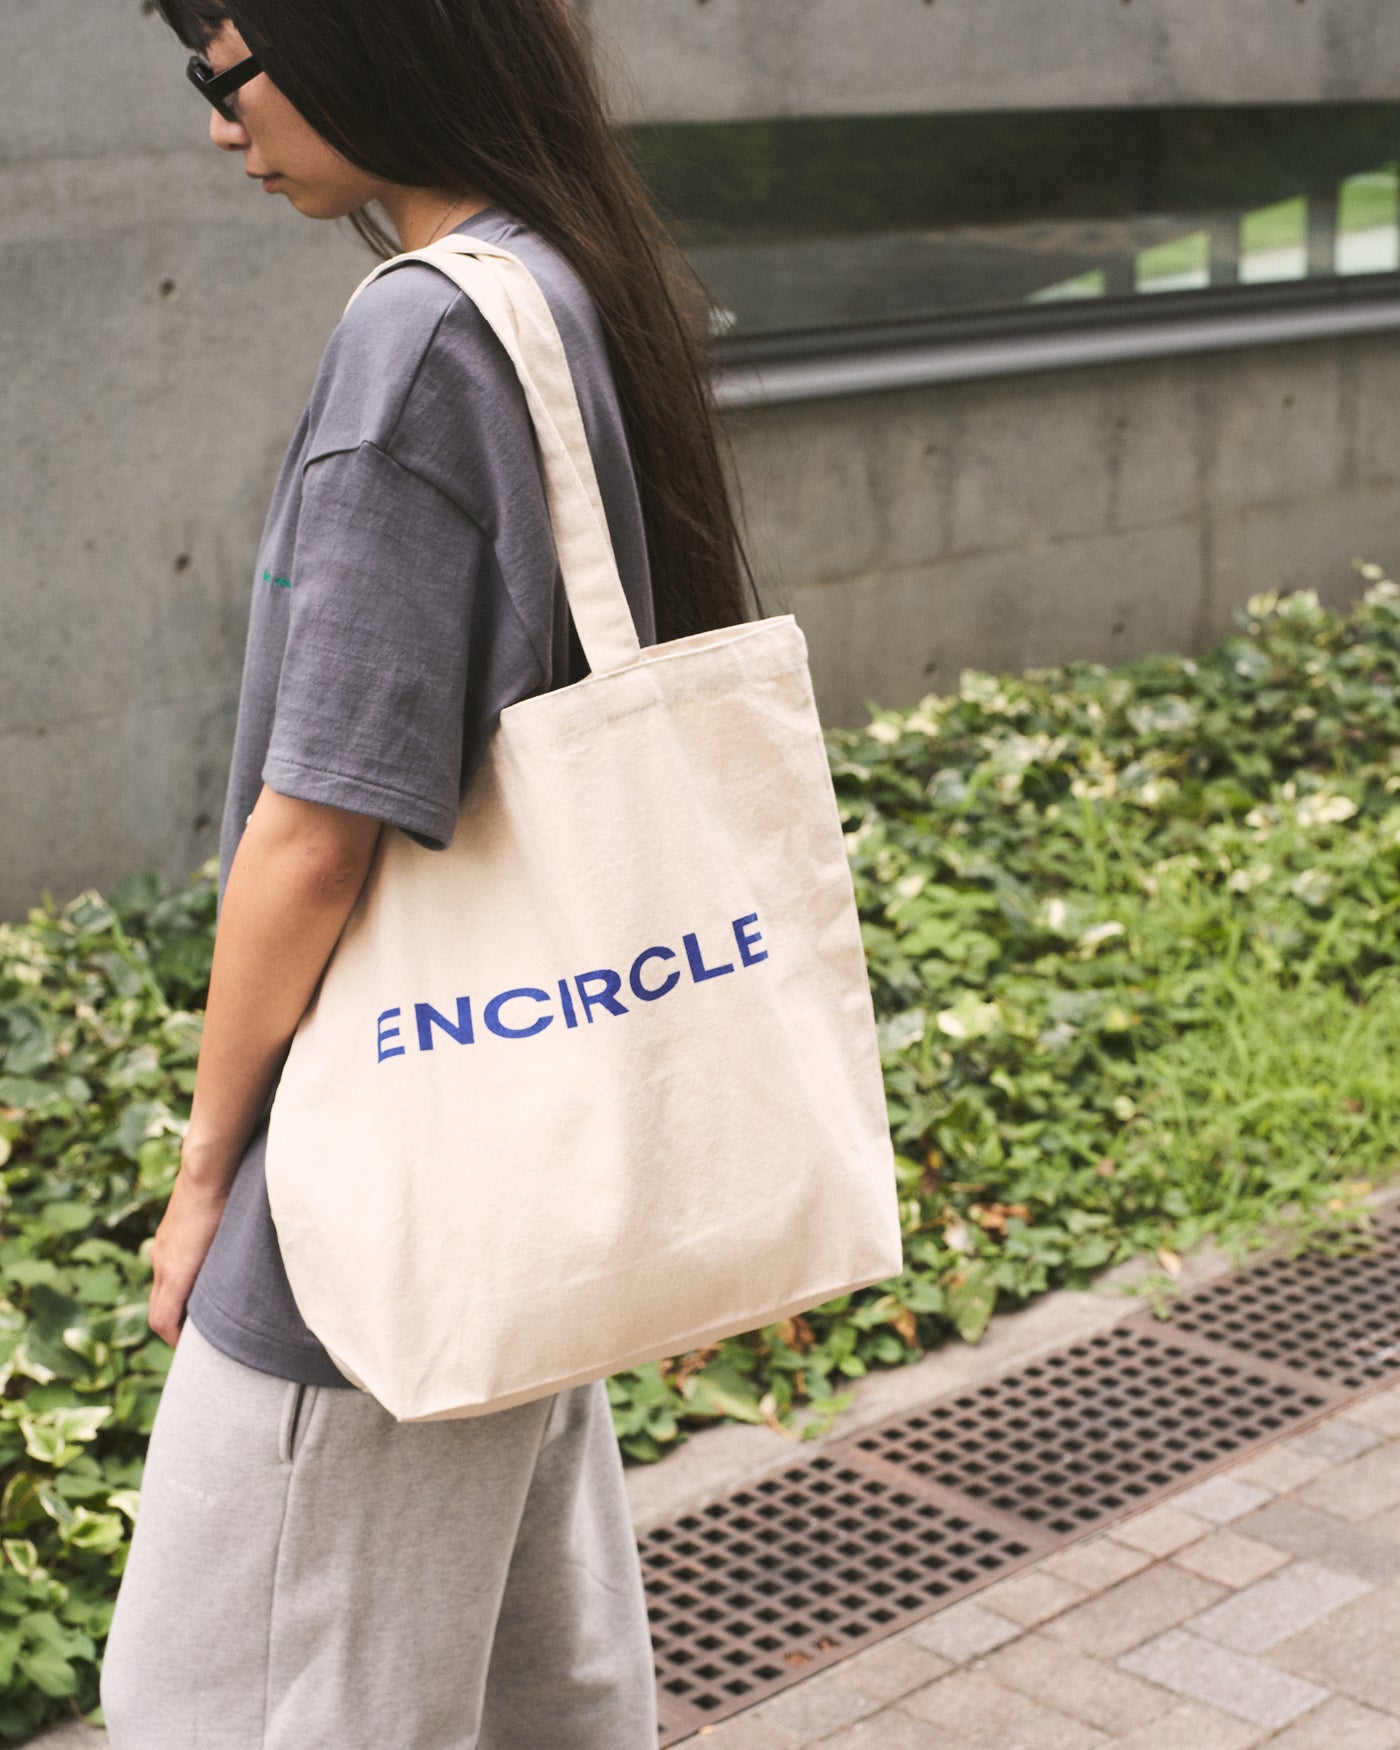 ENCIRCLE bag